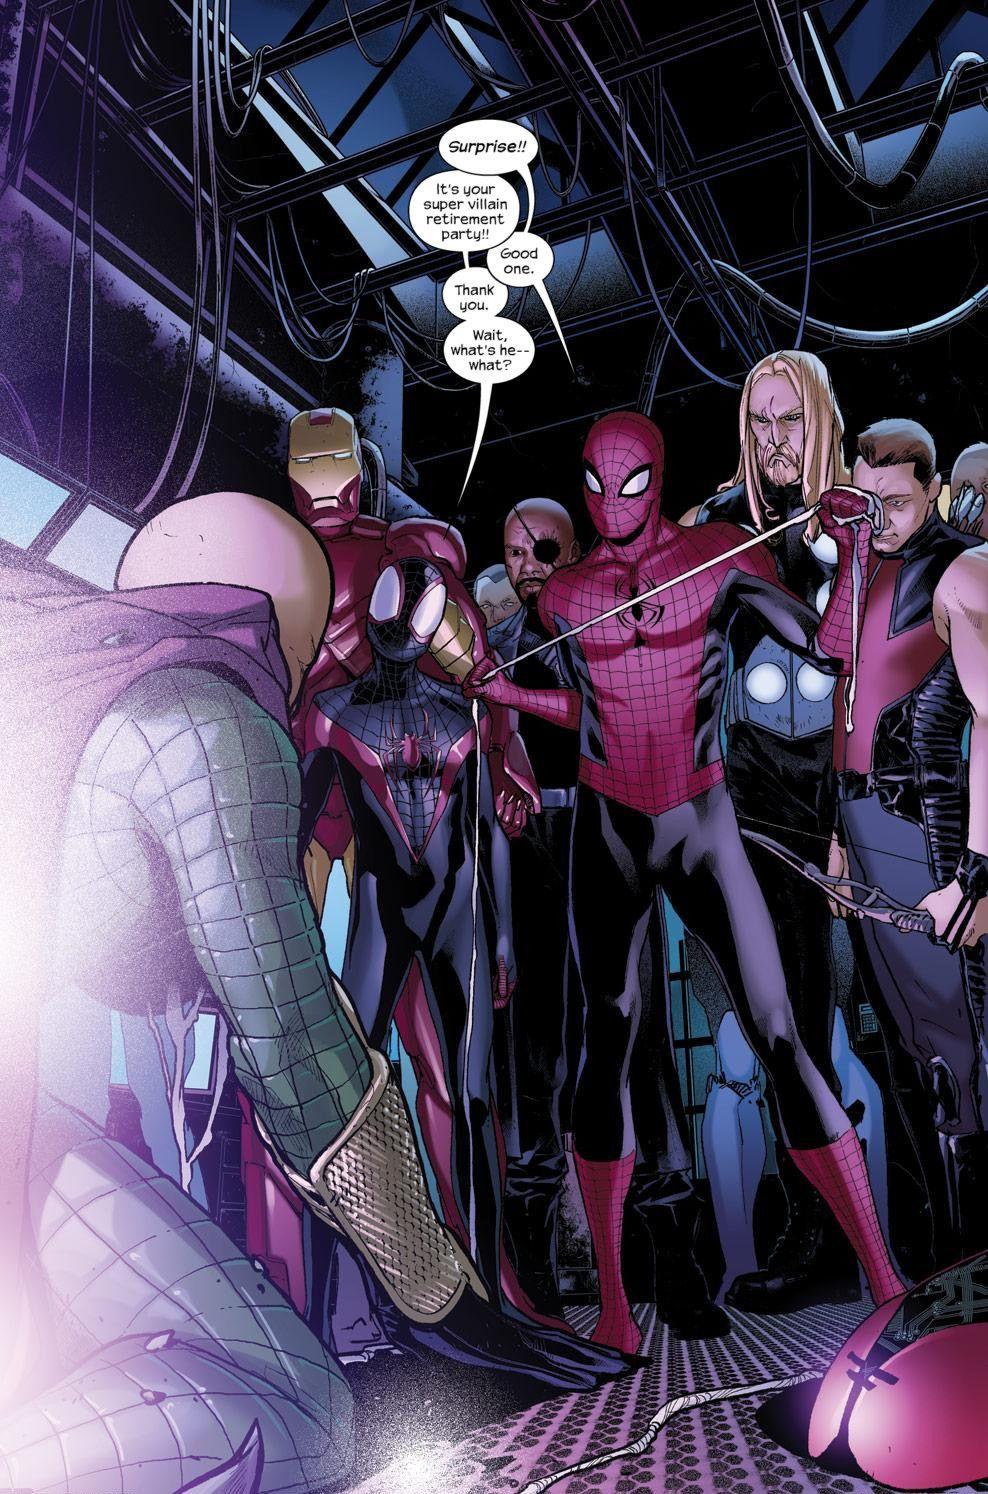 Spider Men And The Ultimates Vs. Mysterio. Comics